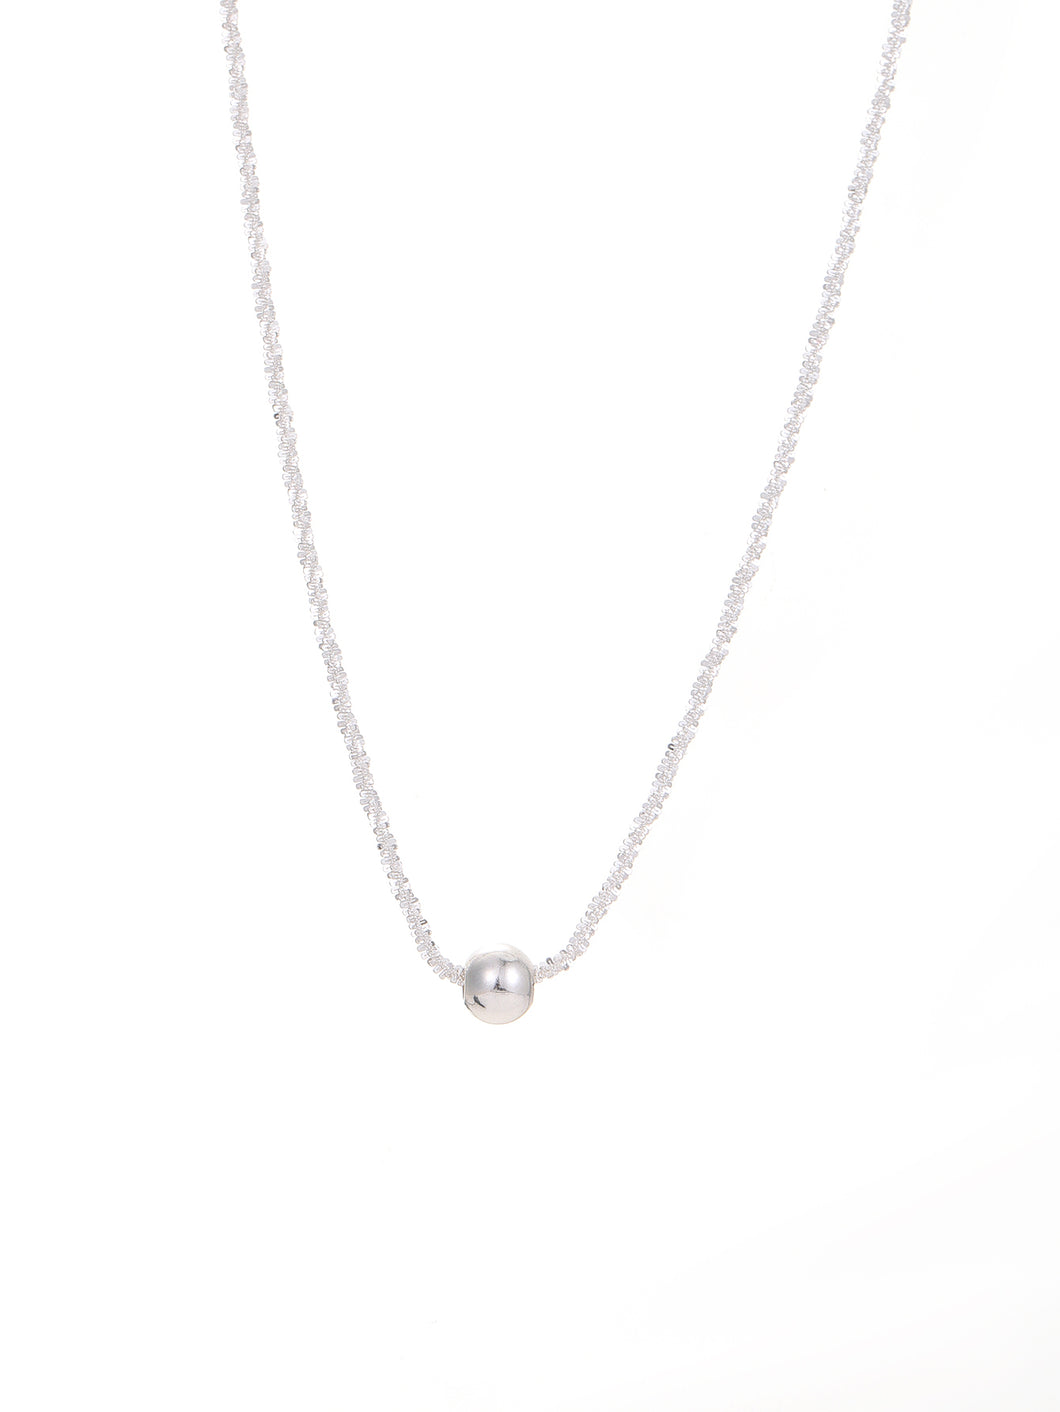 Bead Decor Silver Necklace